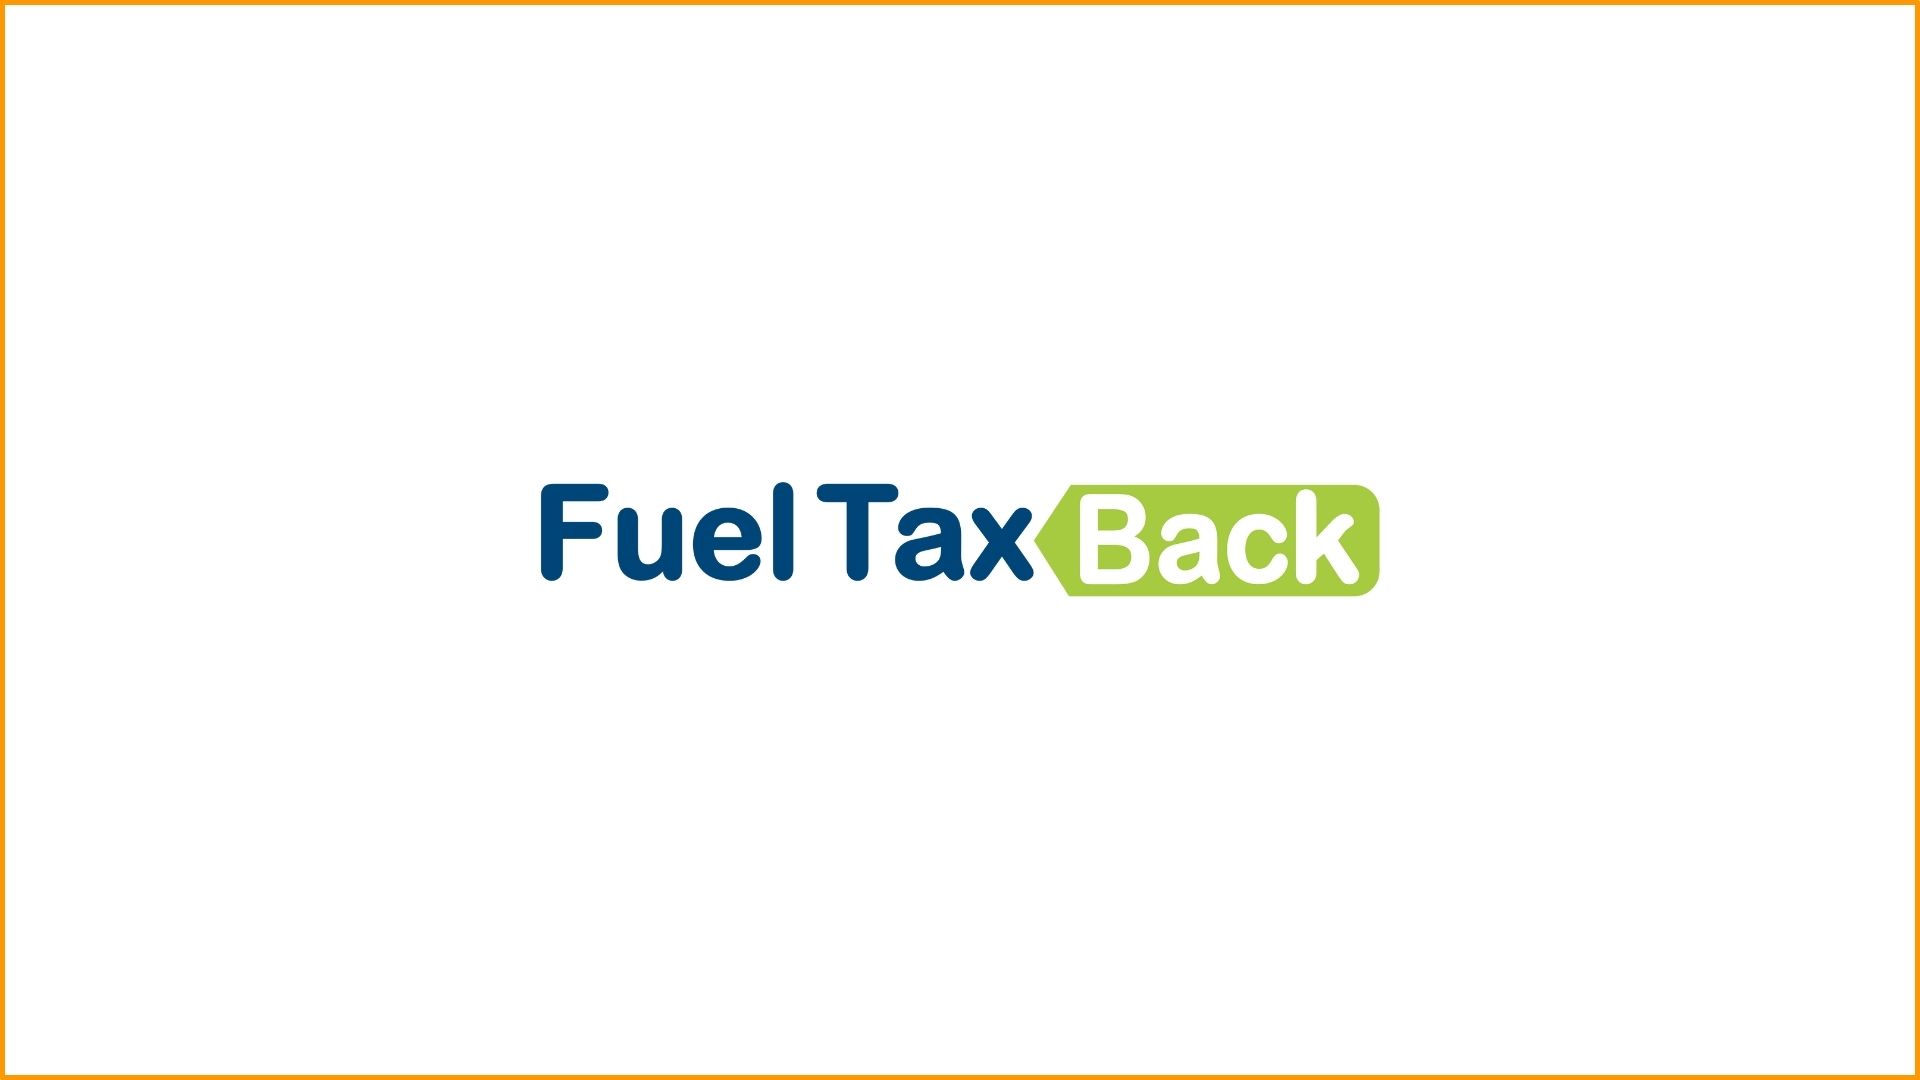 Fuel Tax Back